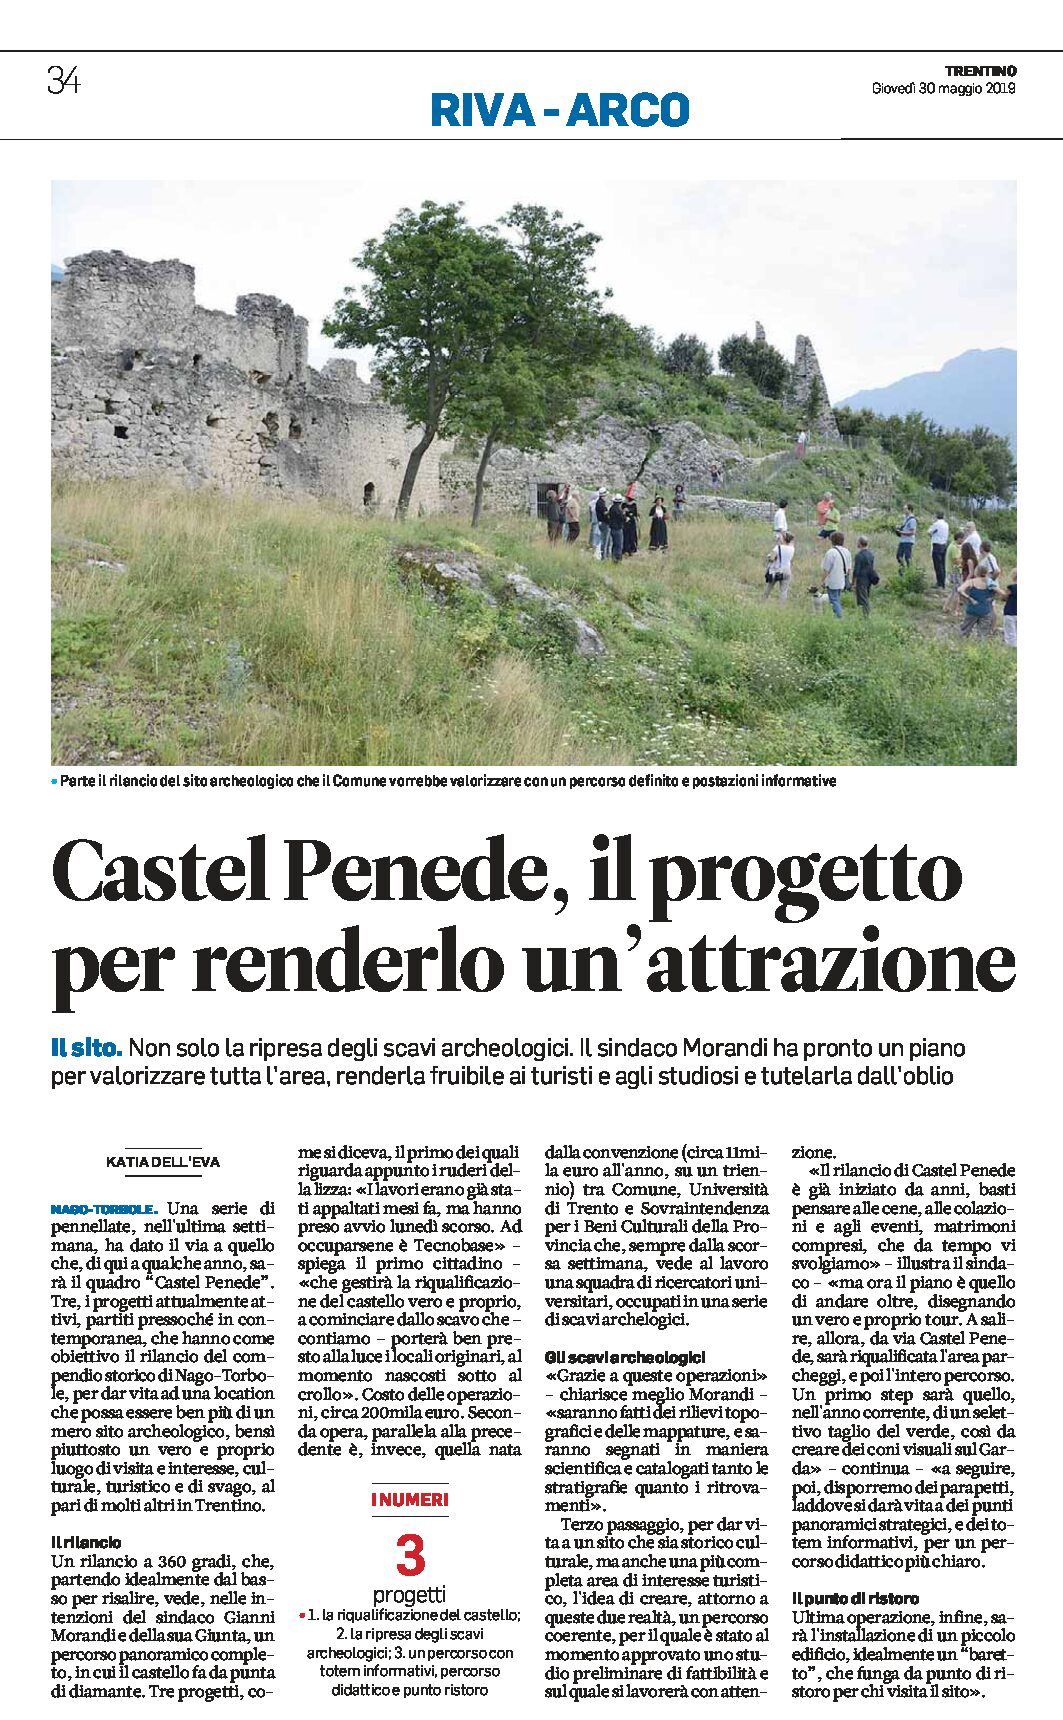 Castel Penede: il progetto per renderlo un’attrazione